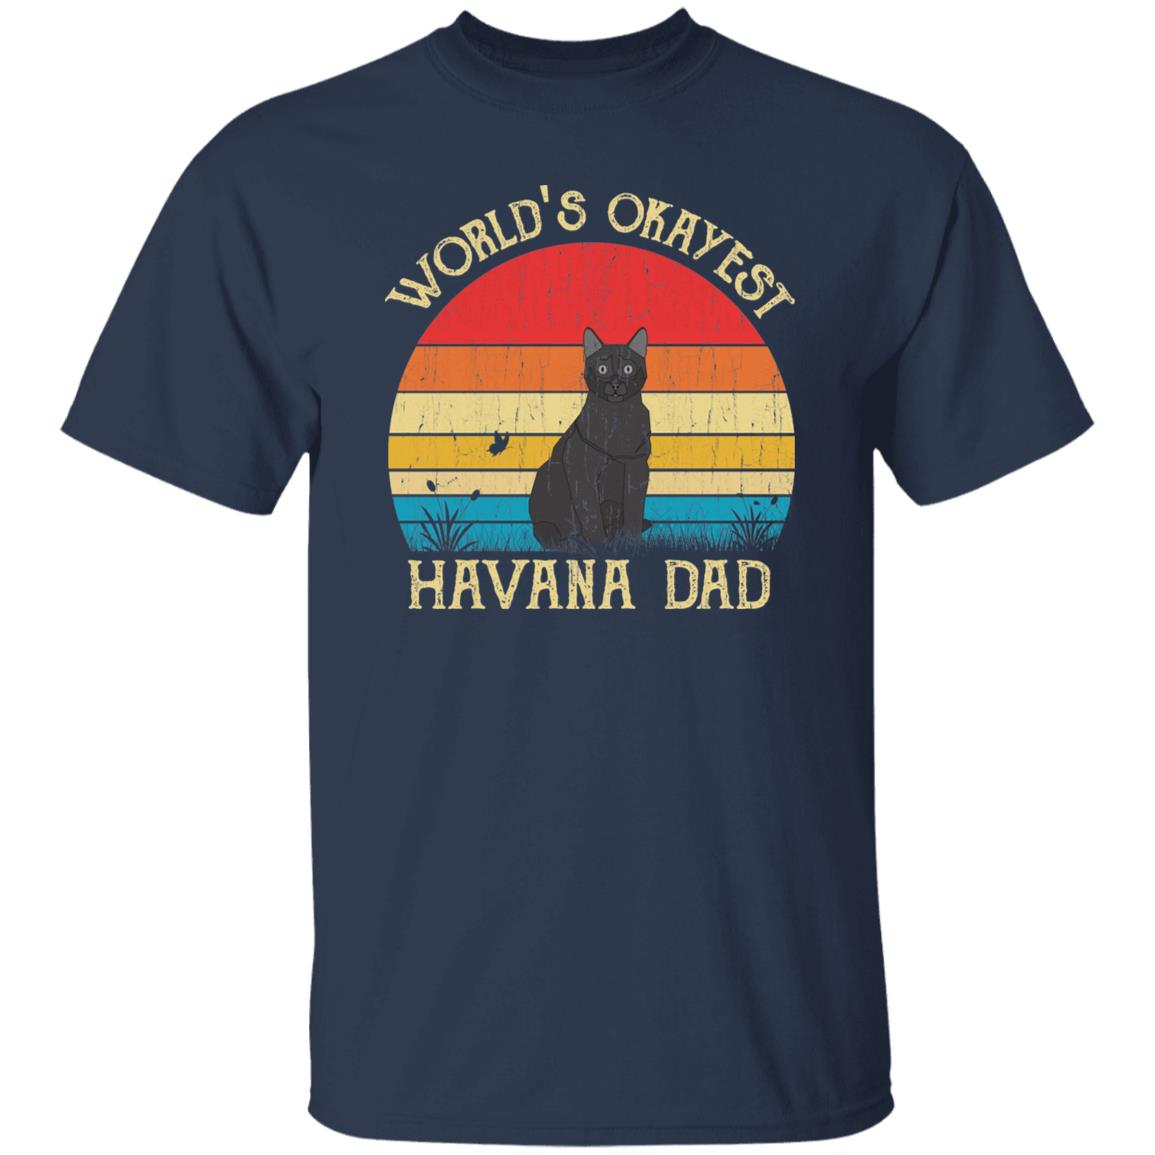 World's Okayest Havana dad Retro Style Unisex T-shirt Black Navy Dark Heather-Navy-Family-Gift-Planet